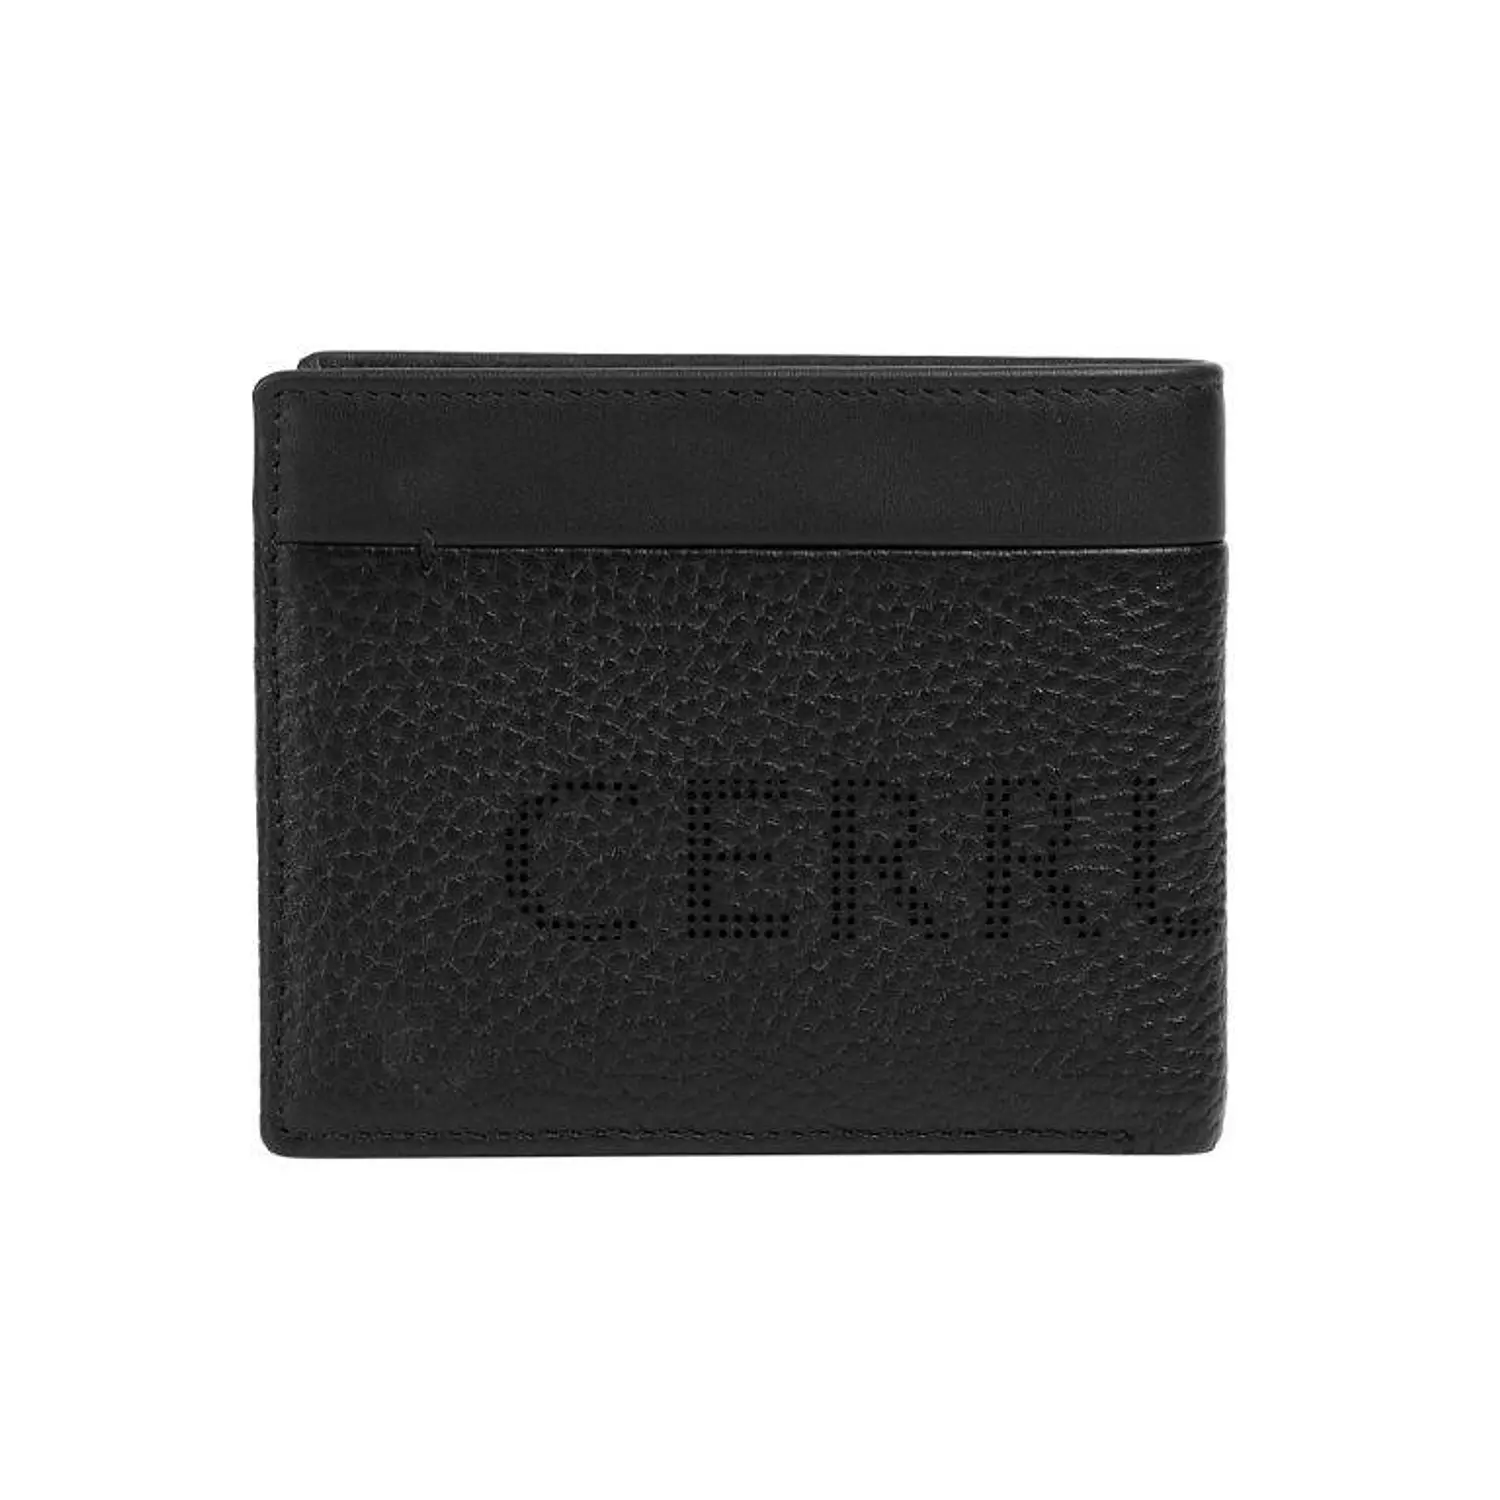 Cerruti1881 - Wallet For Men Calf Leather Black - CEPU05544M hover image